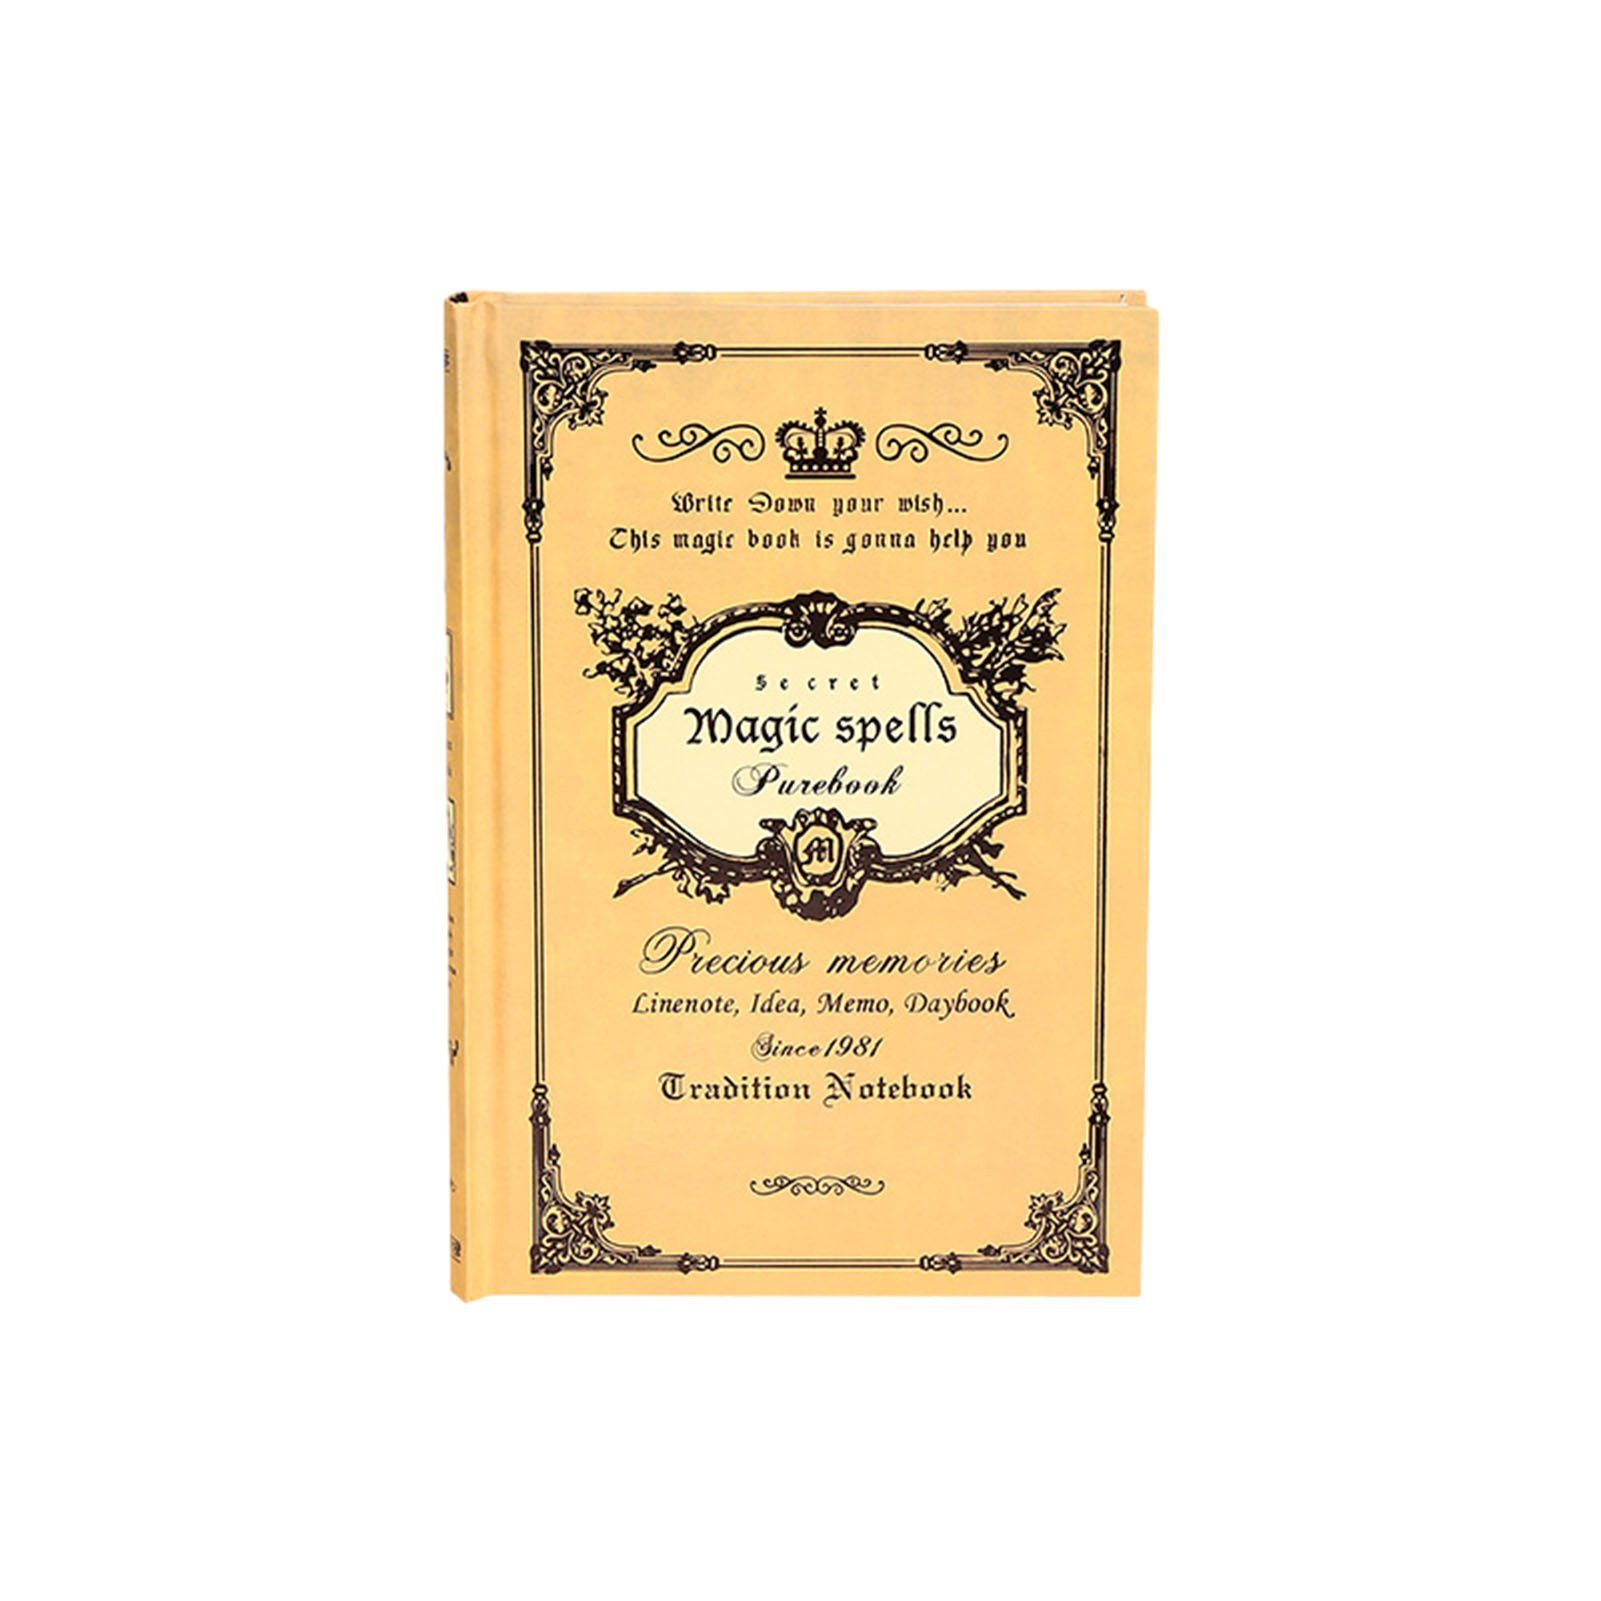 Vintage-Stil Für yellow Studenten, Notizbuch Tagebuch Einsetzbar, Vielseitig A5-Notizbuch Blusmart Im